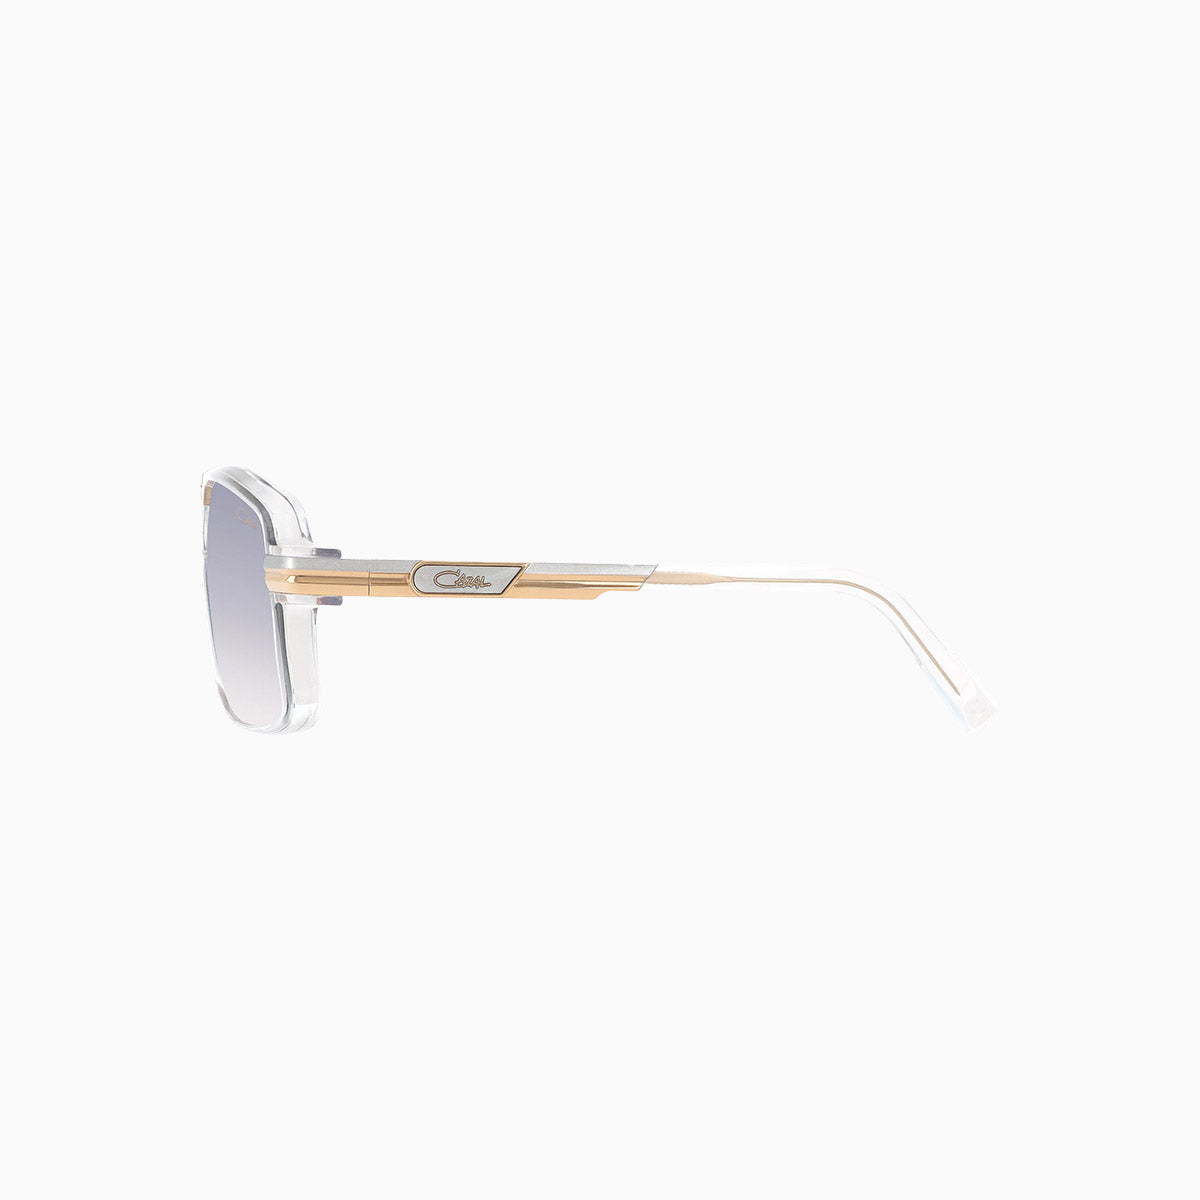 cazal-eyewear-mod-6032-3-cazal-crystal-sunglasses-6032-3-004